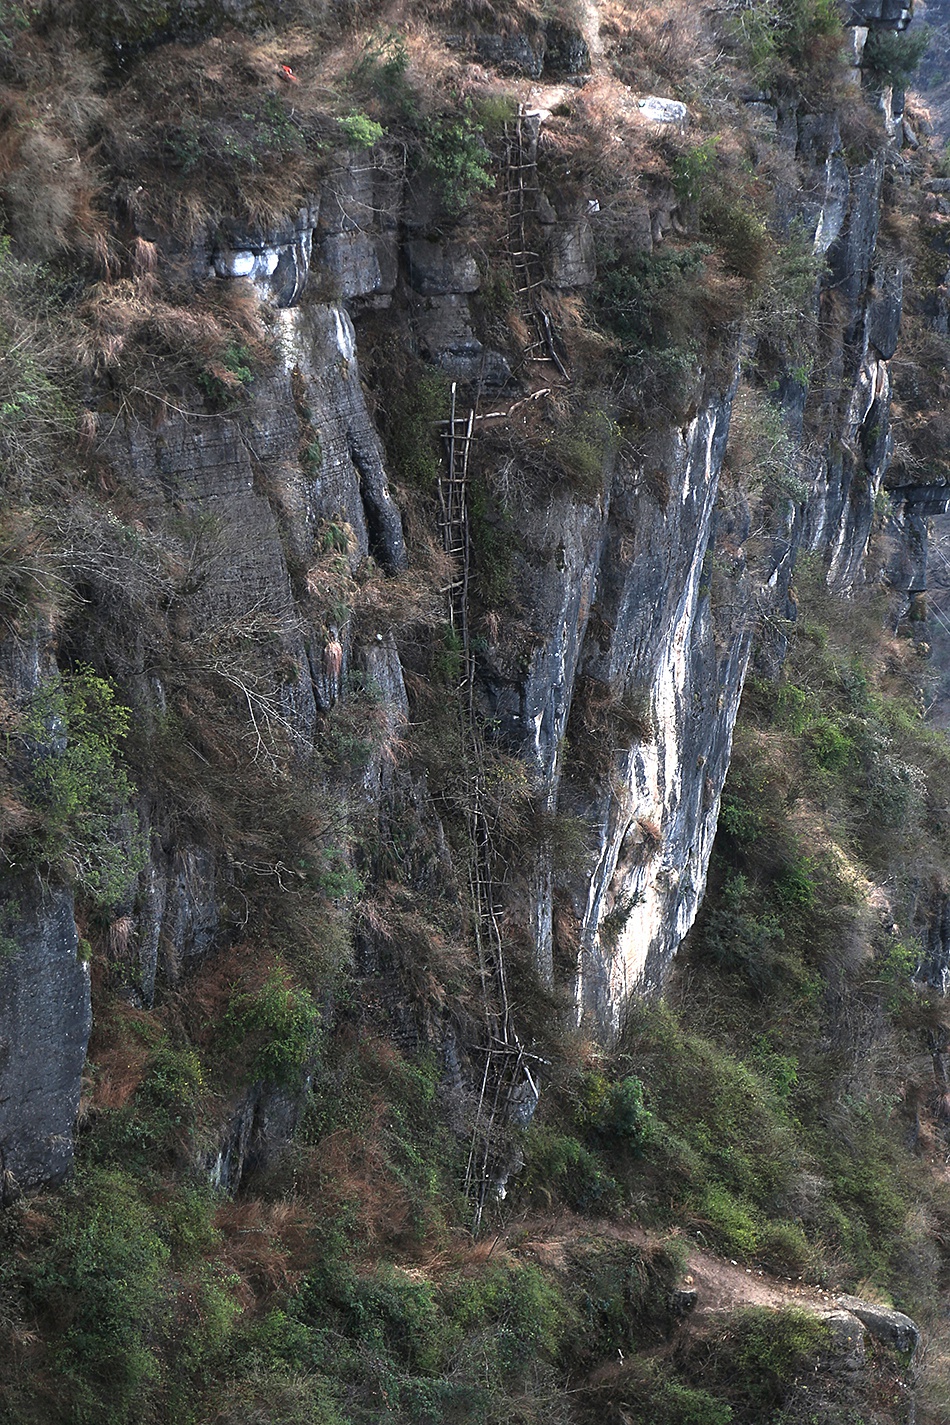 大凉山悬崖村全景图片图片